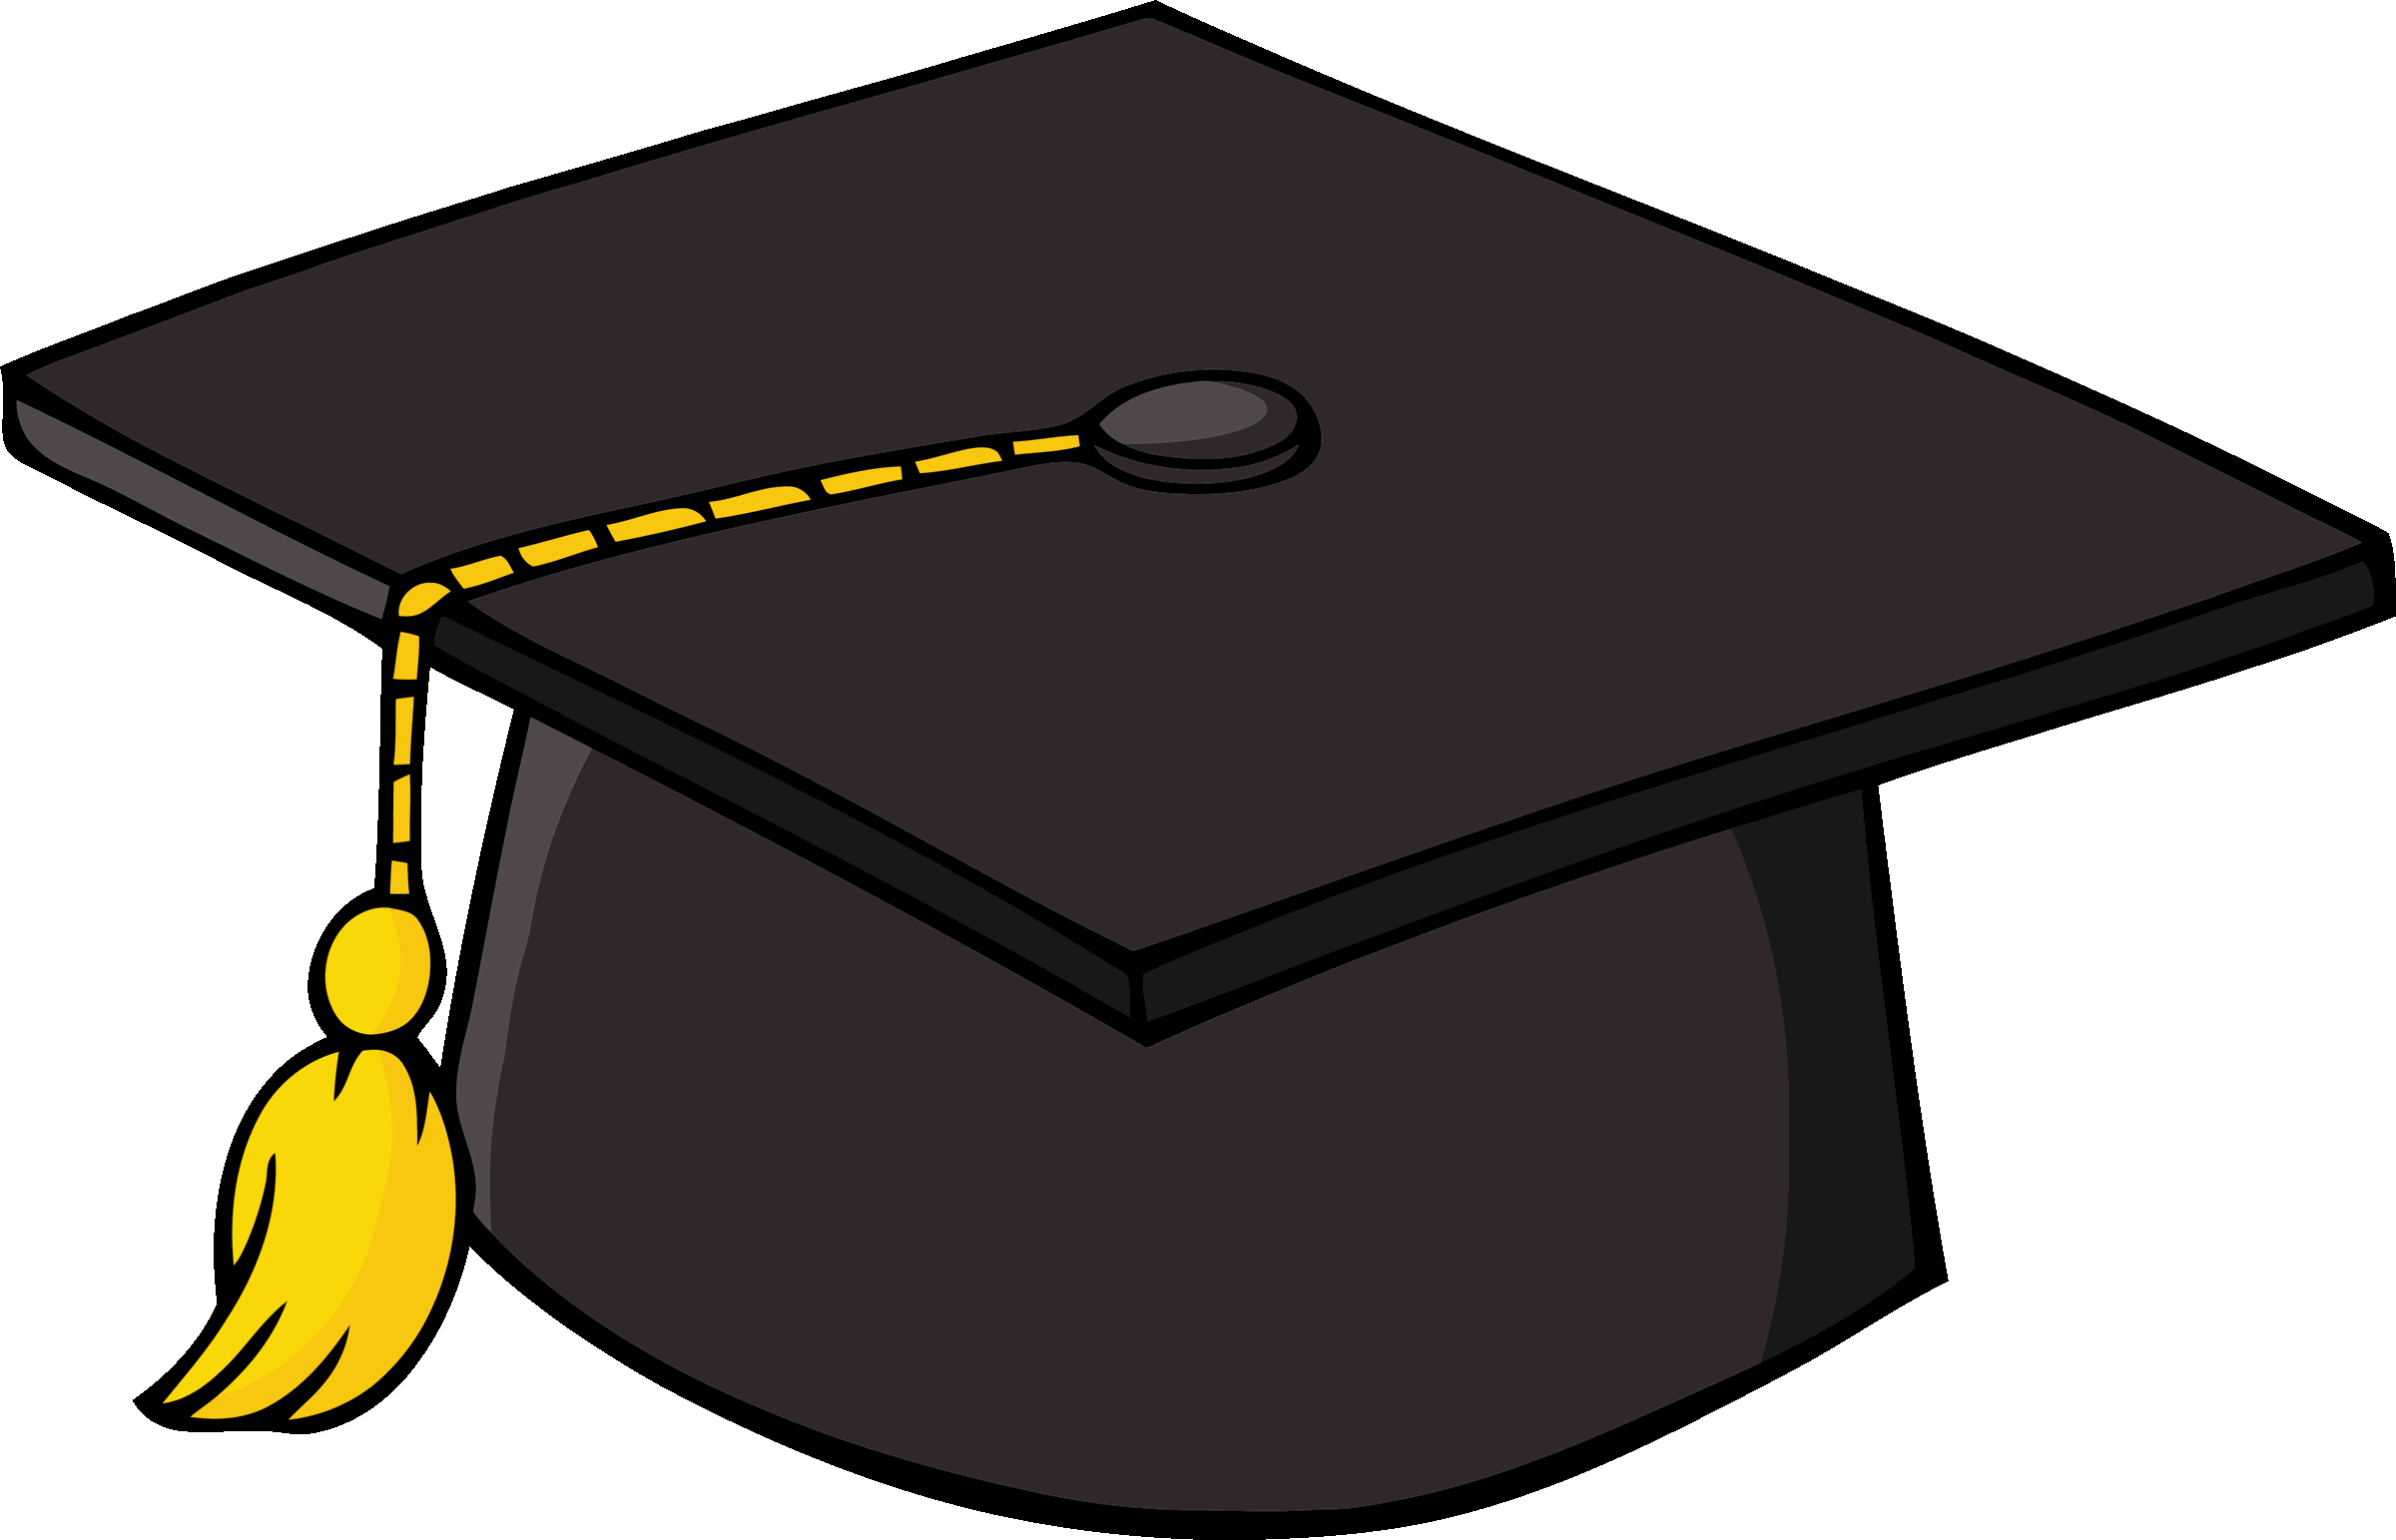 Cartoon Graduation Hat | Free Download Clip Art | Free Clip Art ...